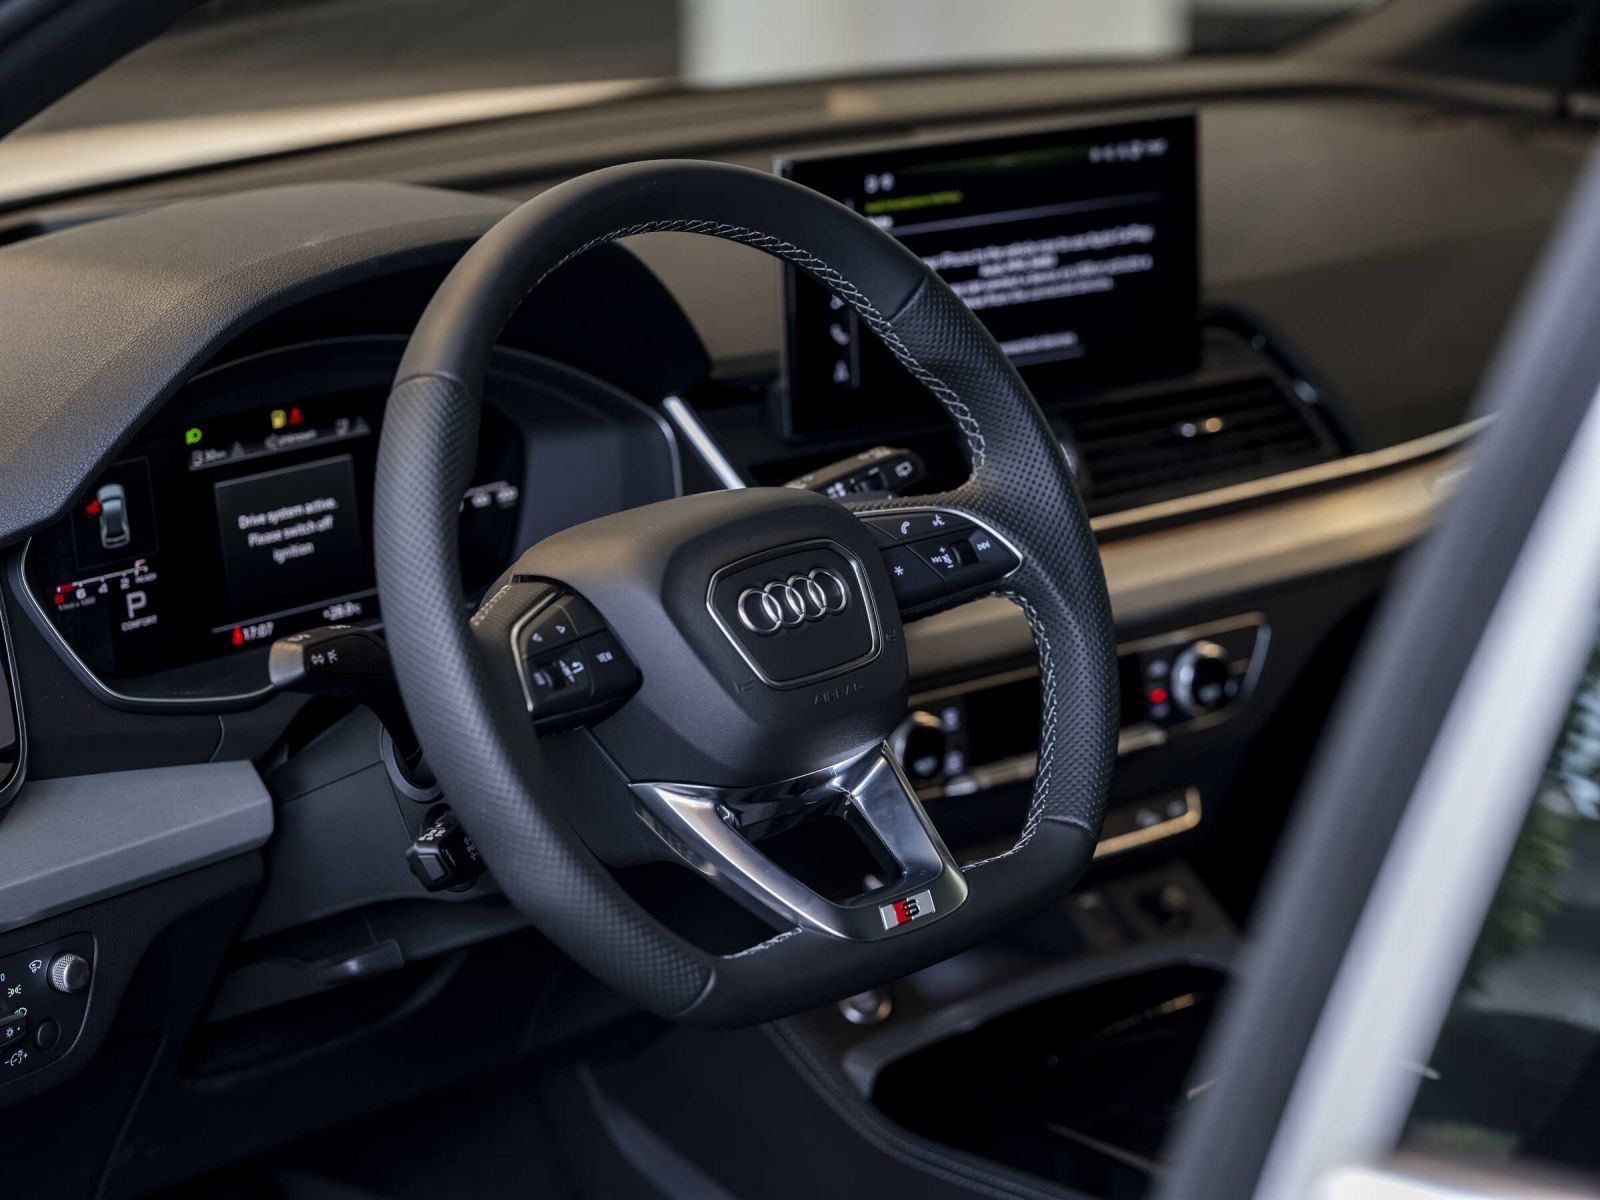 Vô-lăng của Audi Q5 45 S line được thiết kế dạng D-cut thể thao, bọc da mềm mại